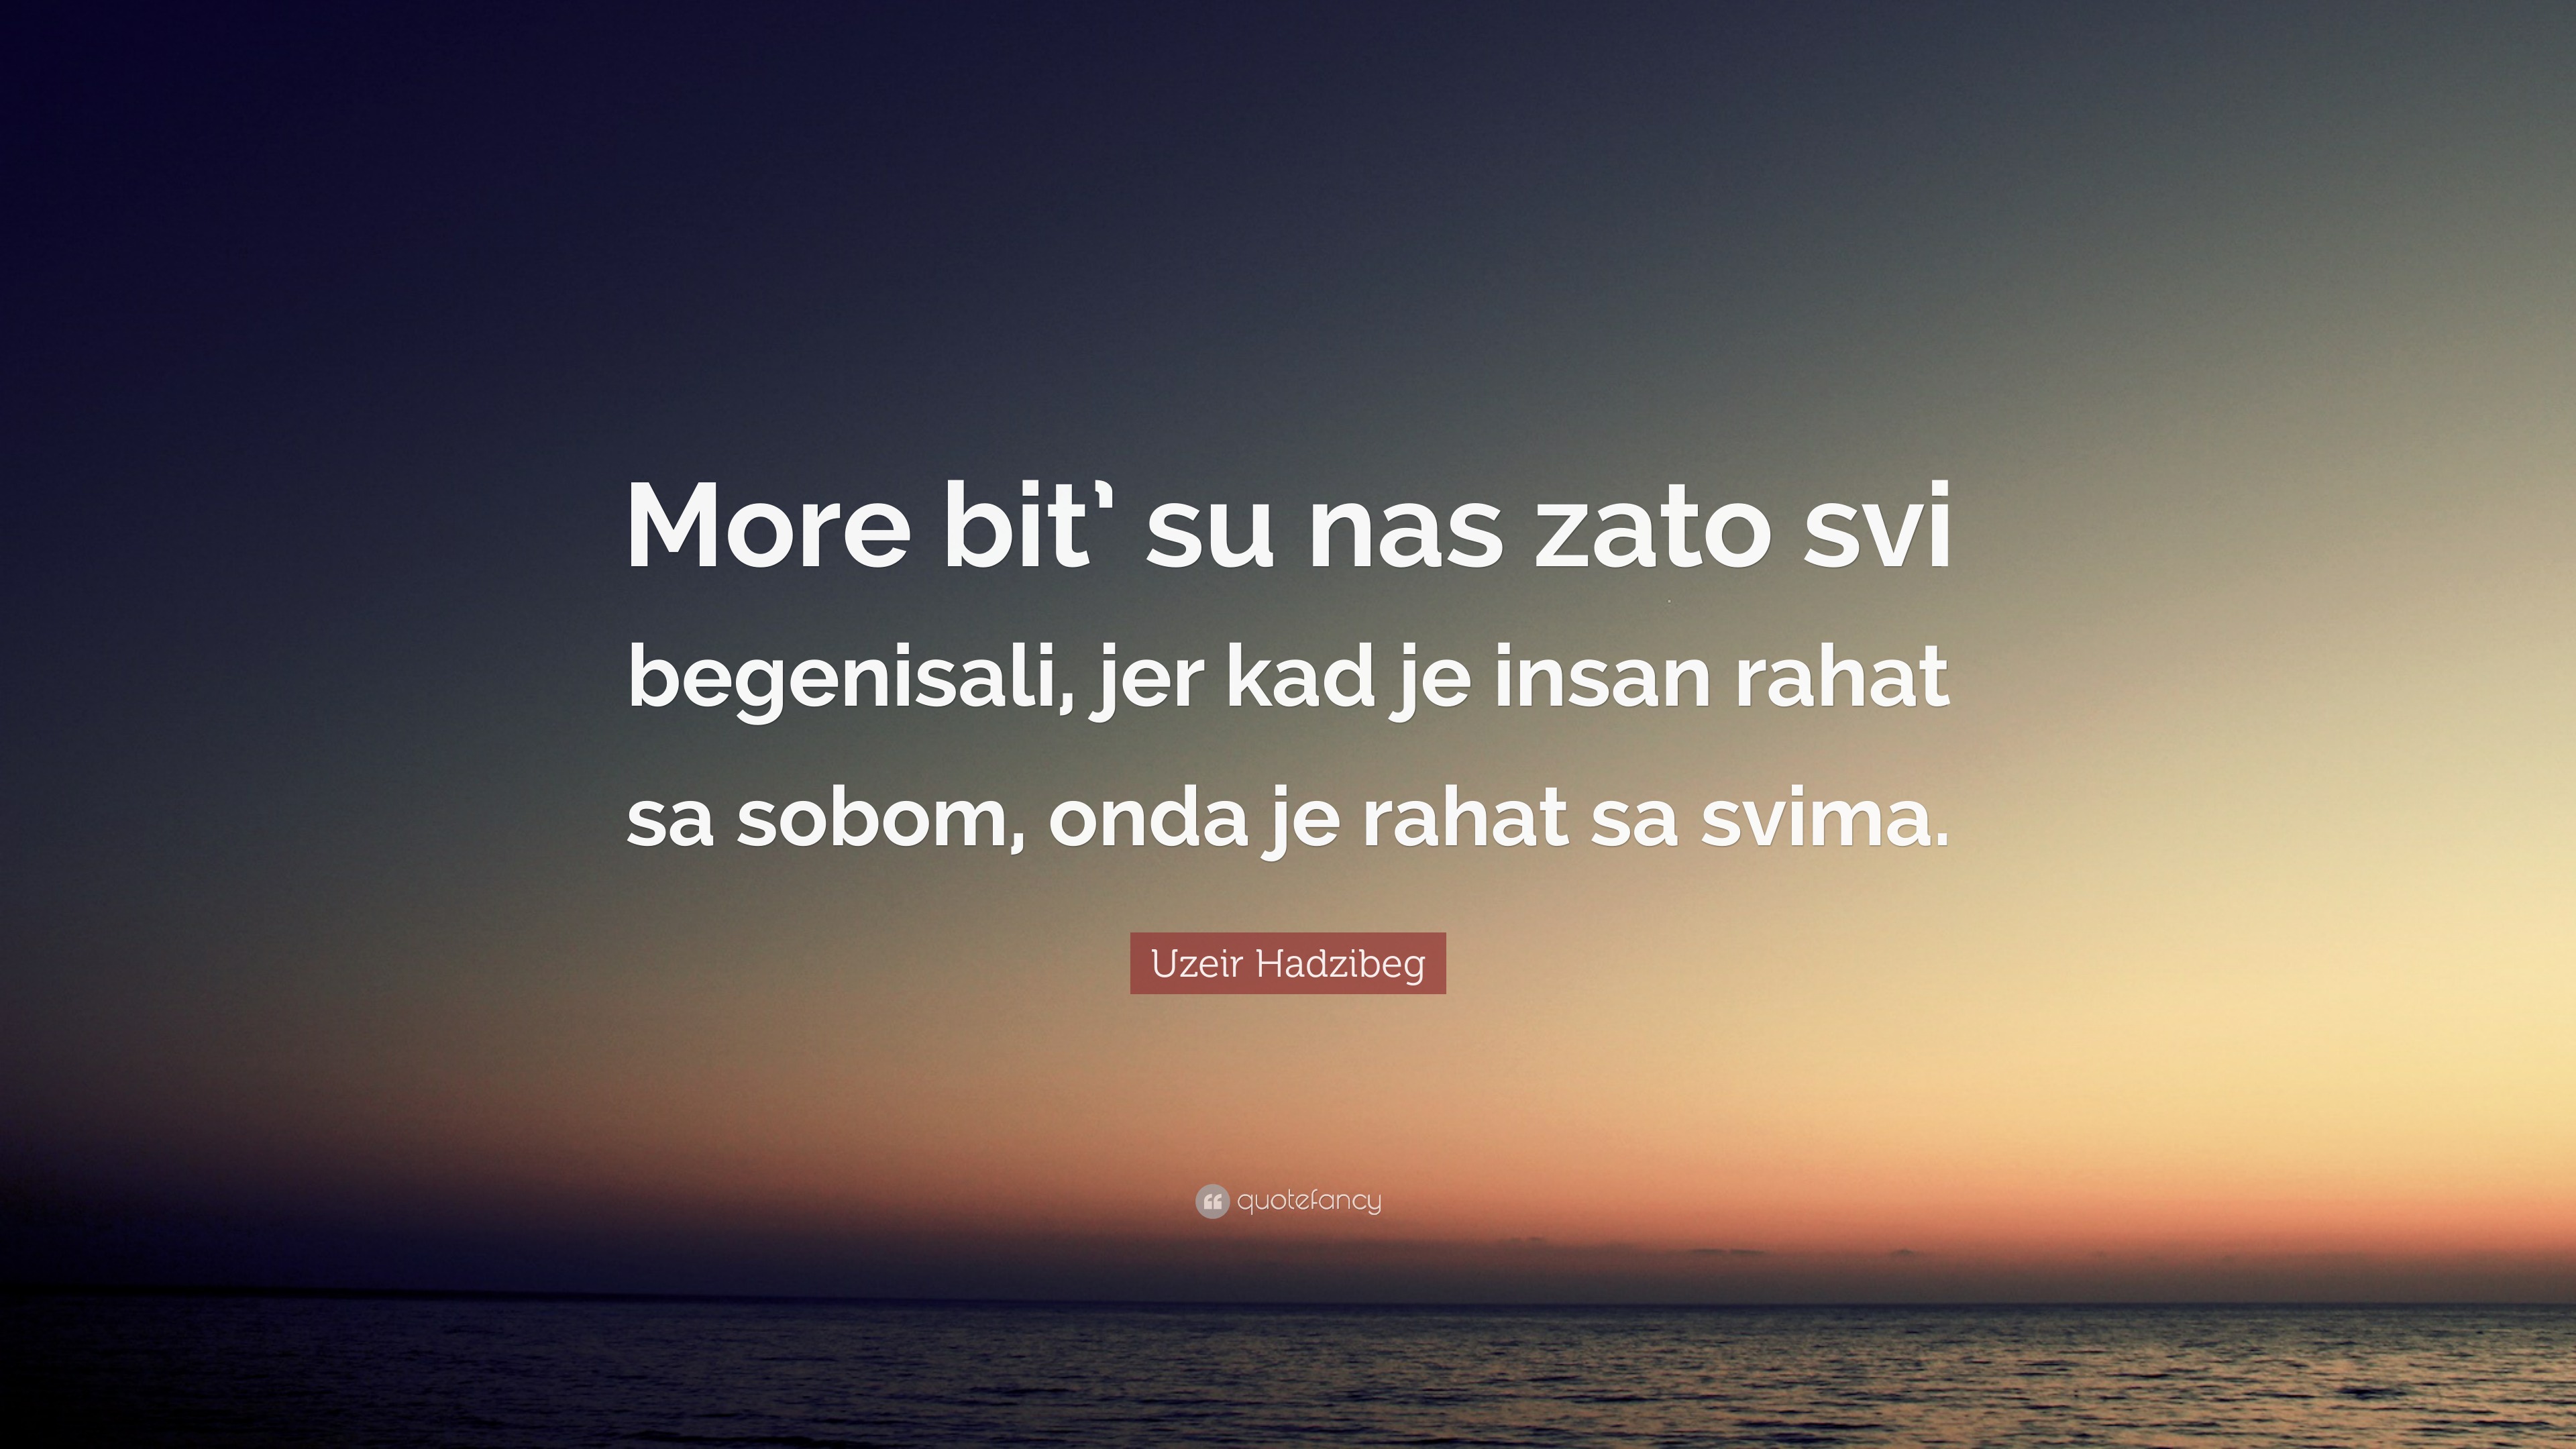 Uzeir Hadzibeg Quote: “More bit’ su nas zato svi begenisali, jer kad je ...